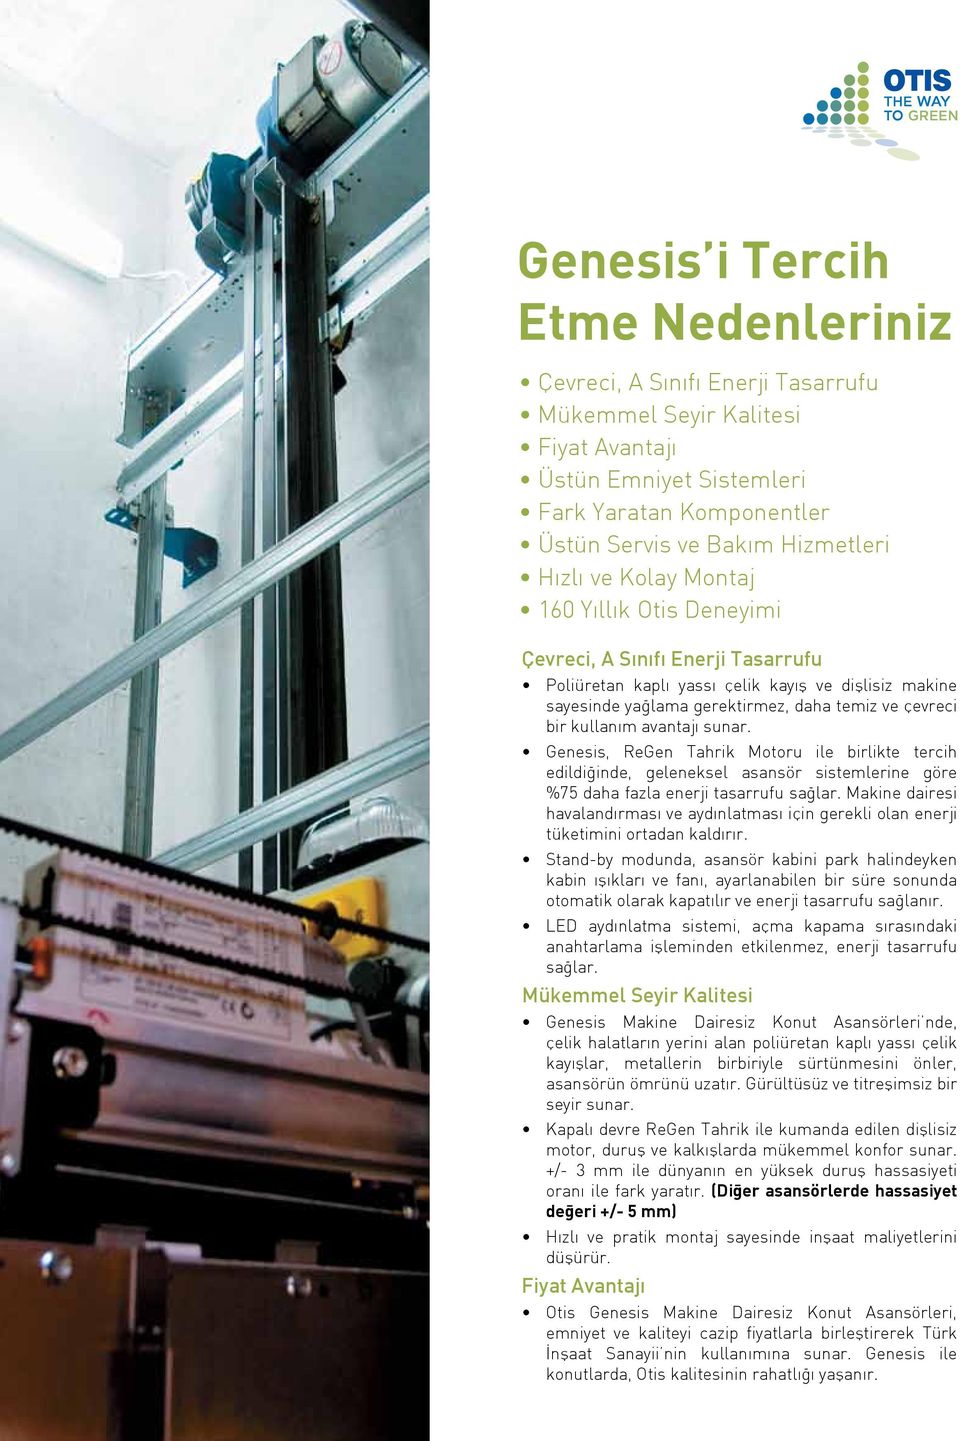 avantajı sunar. Genesis, ReGen Tahrik Motoru ile birlikte tercih edildiğinde, geleneksel asansör sistemlerine göre %75 daha fazla enerji tasarrufu sağlar.